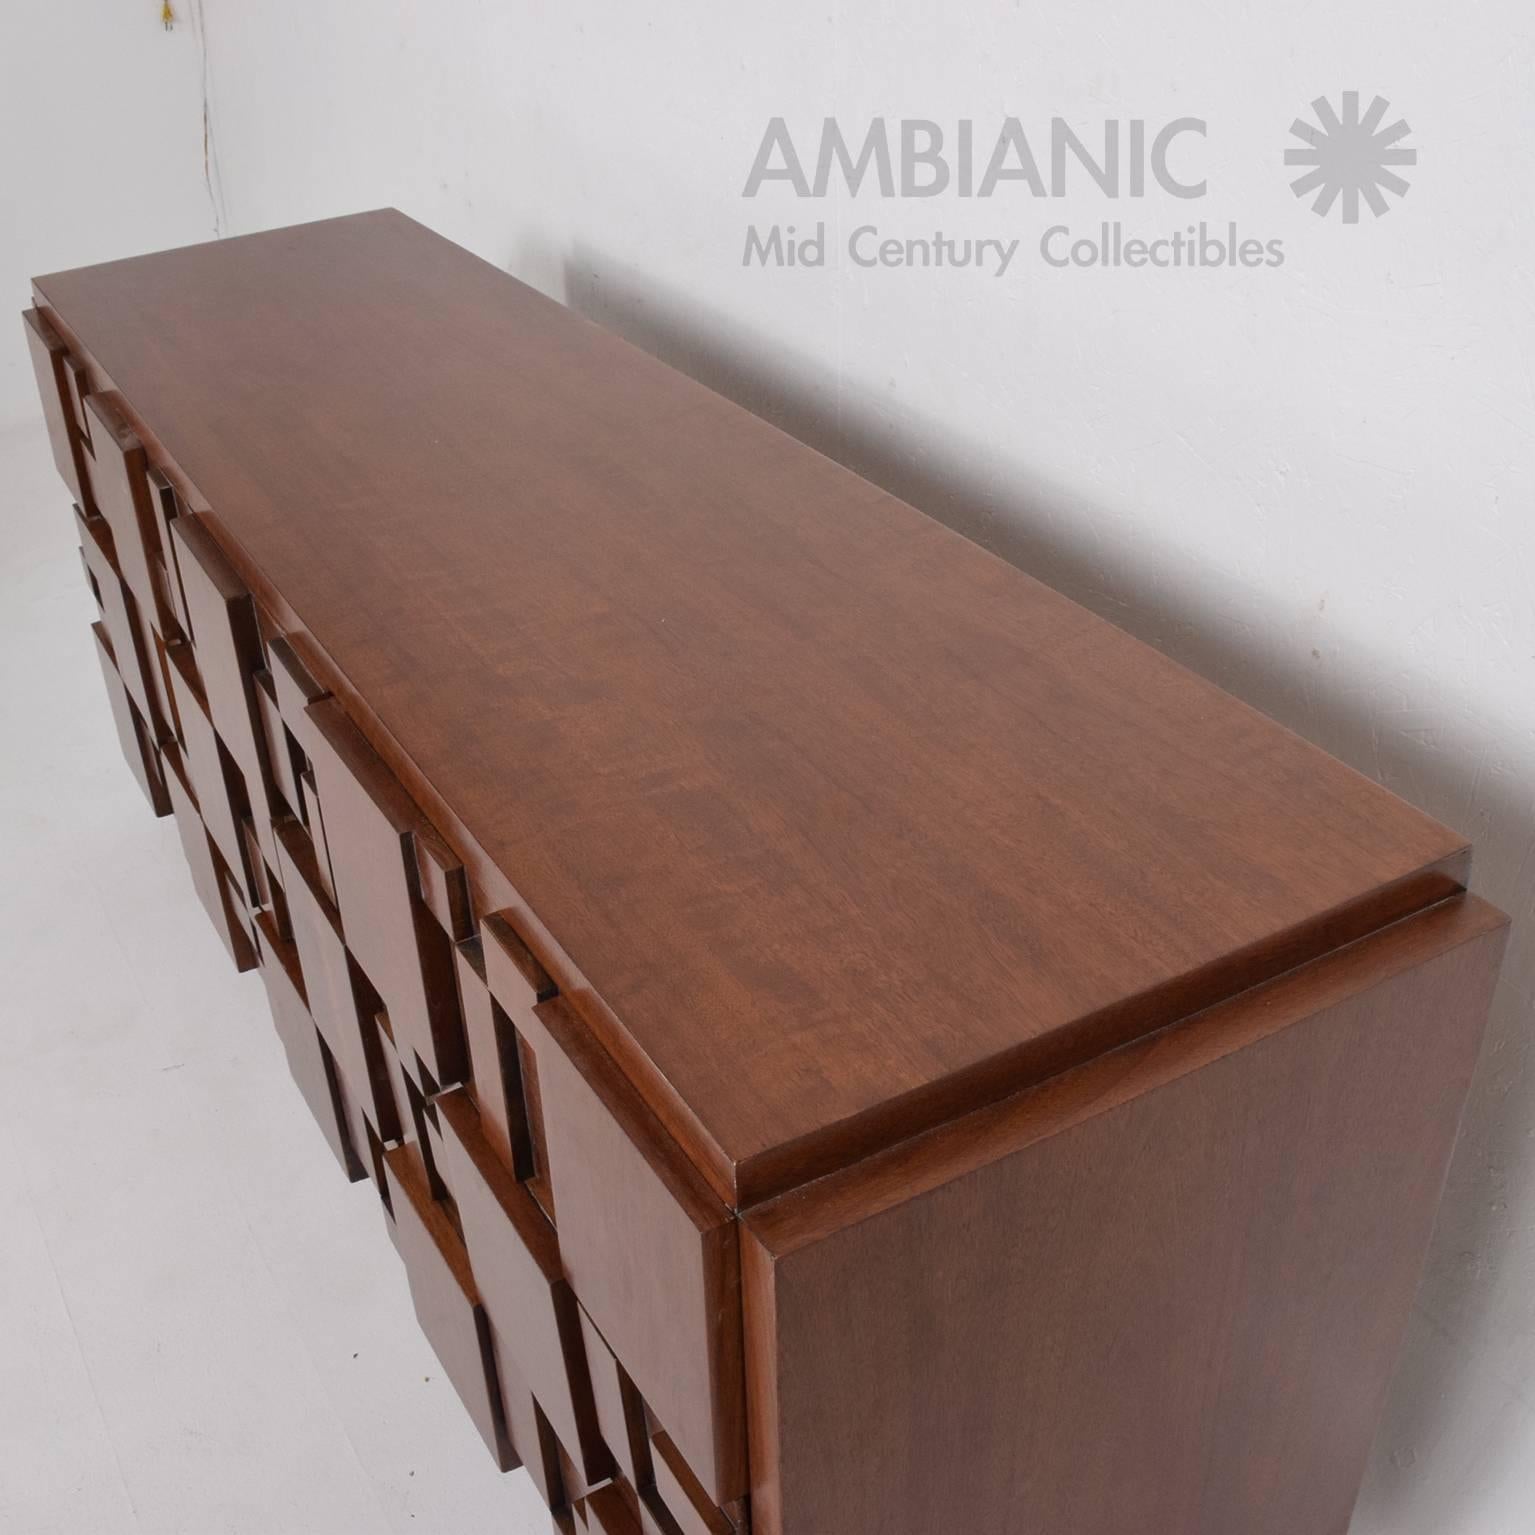 Mid-20th Century Mid-Century Modern Lane Brutalist Dresser in Excellent Restored Condition